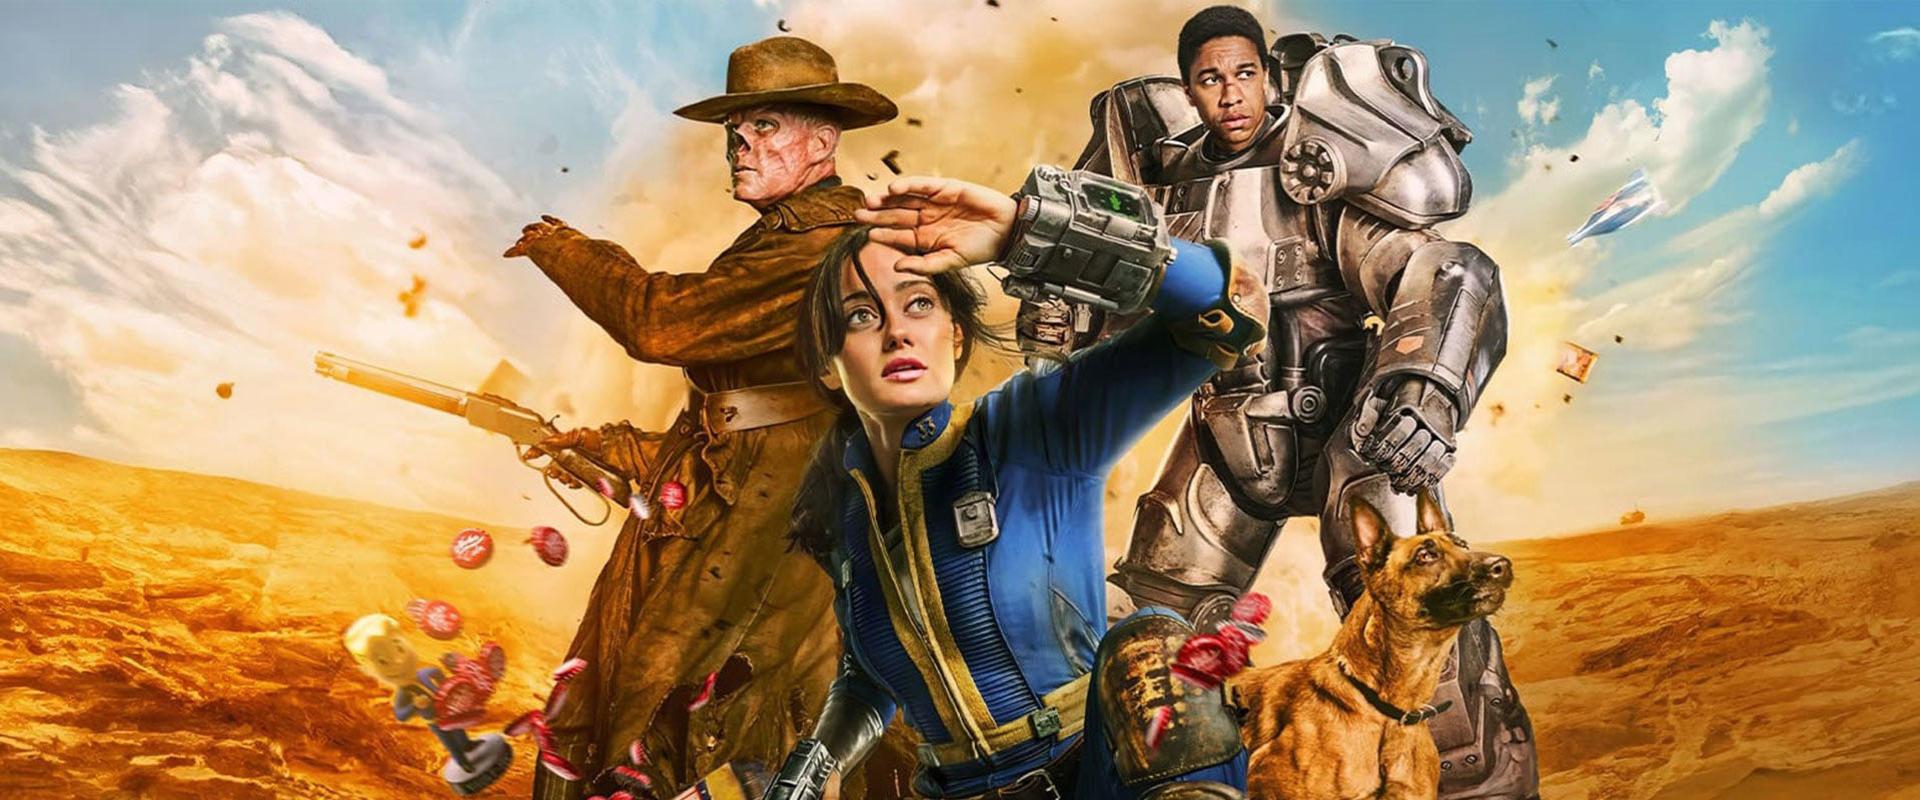 Todd Howard szerint minden, ami az eddigi Fallout játékokban történt, megtörtént